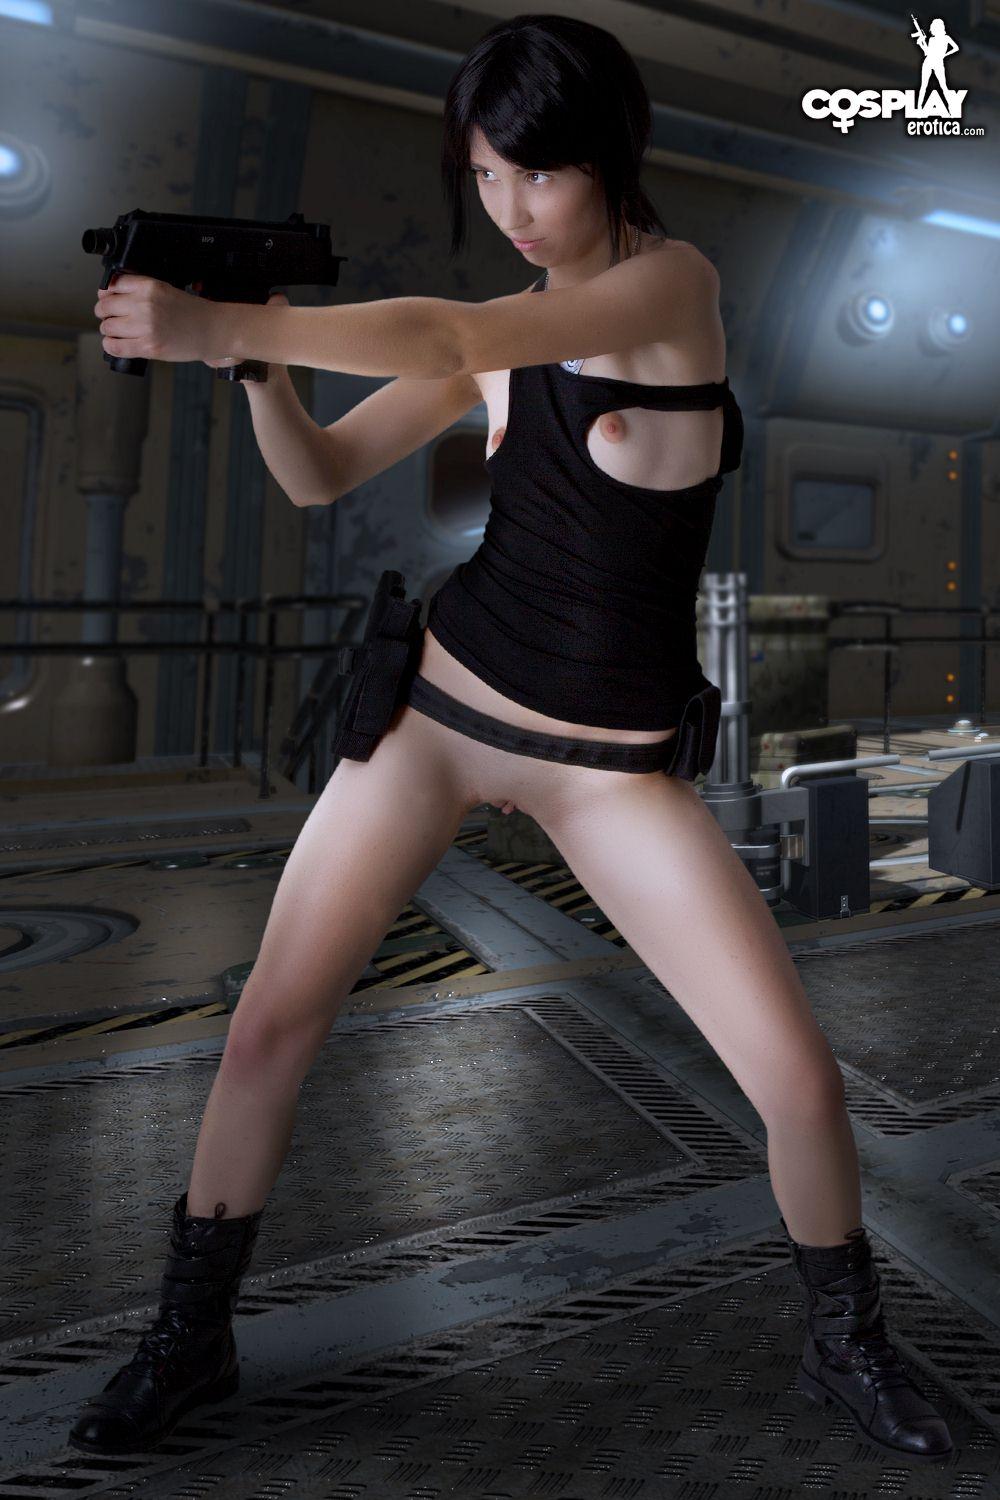 Bilder von heißen Cosplayer Stacy gekleidet für den Dienst auf Battlestar Galactica
 #60298270